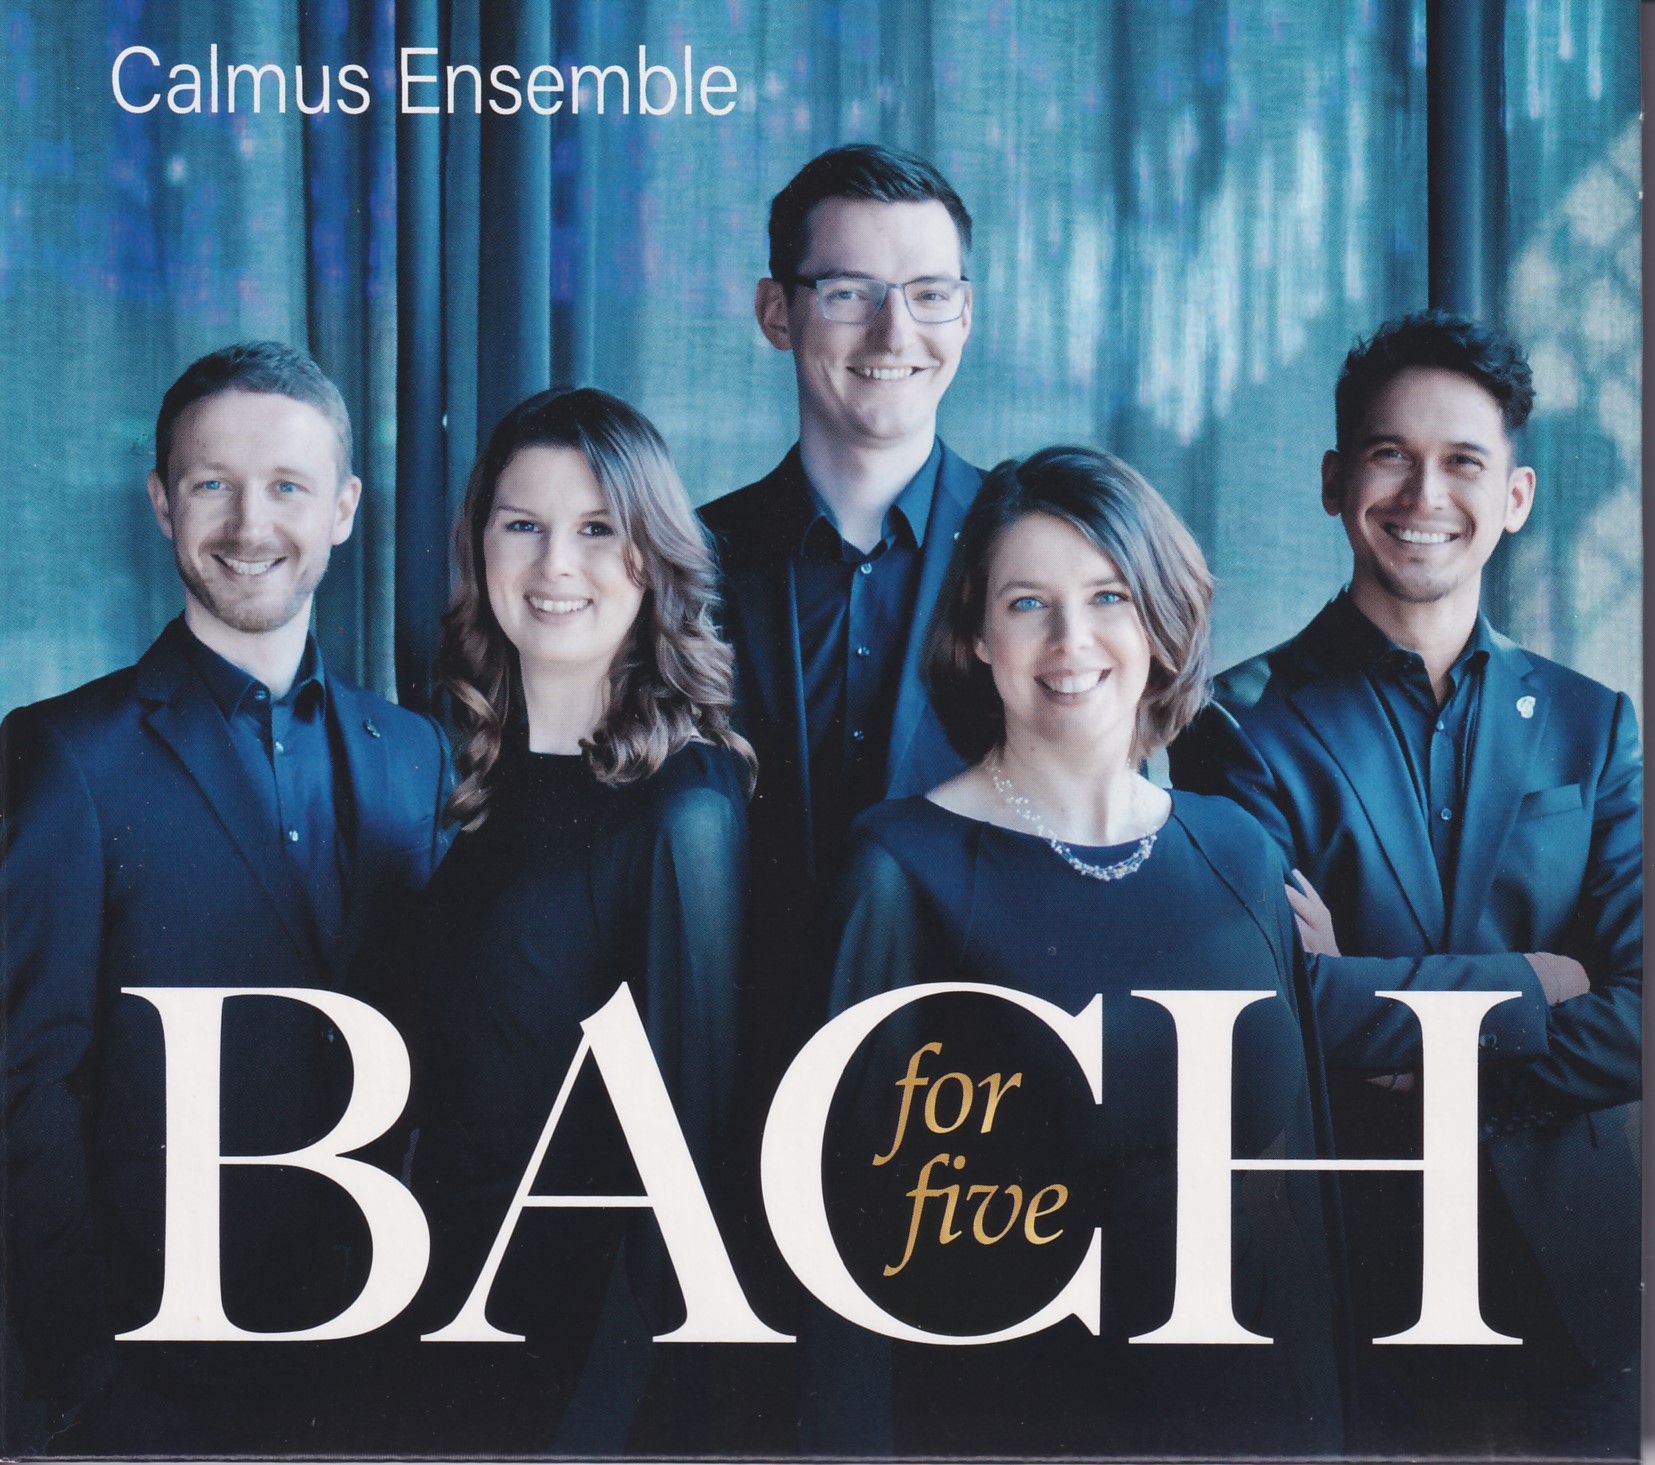 Bach for five - Calmus Ensemble